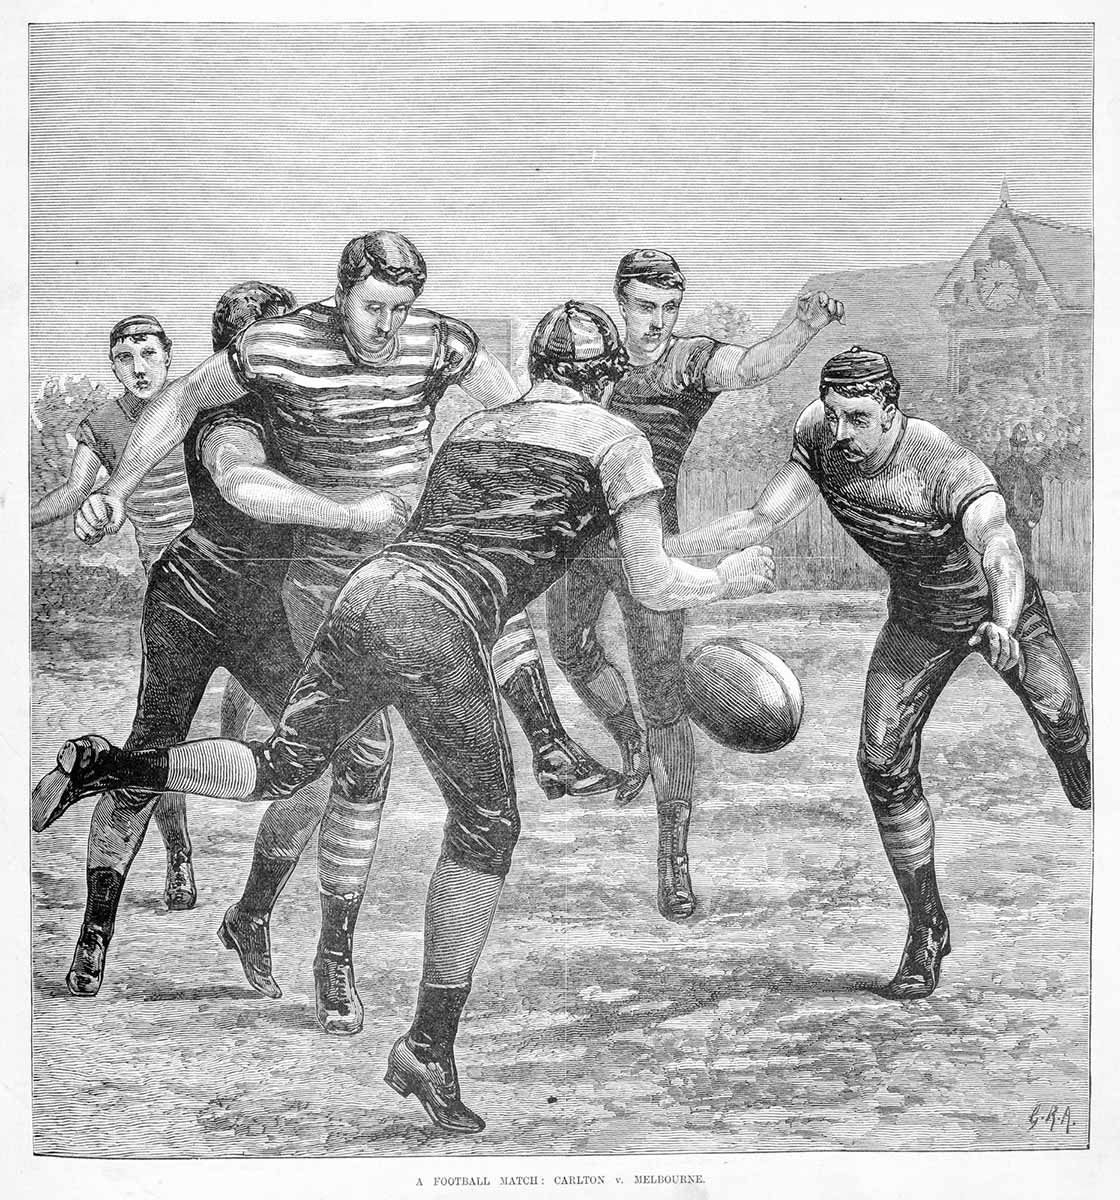 <p>A football match: Carlton v Melbourne,<em>&nbsp;Australasian Sketcher</em>, 18 June 1881</p>
